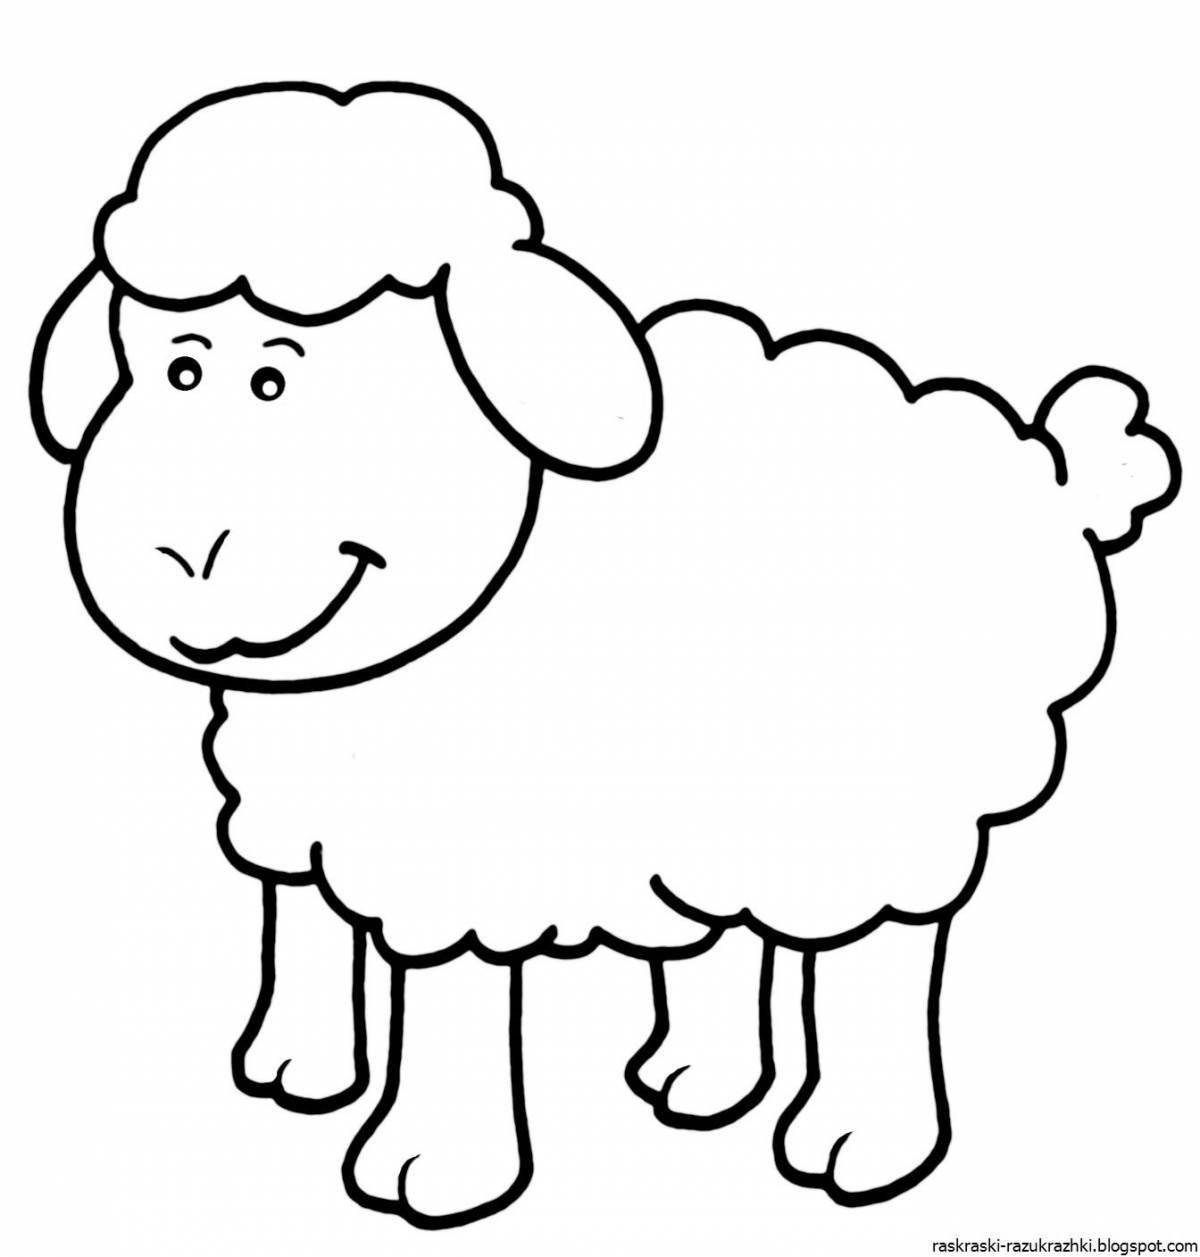 Великолепная овечка-раскраска для детей 4-5 лет